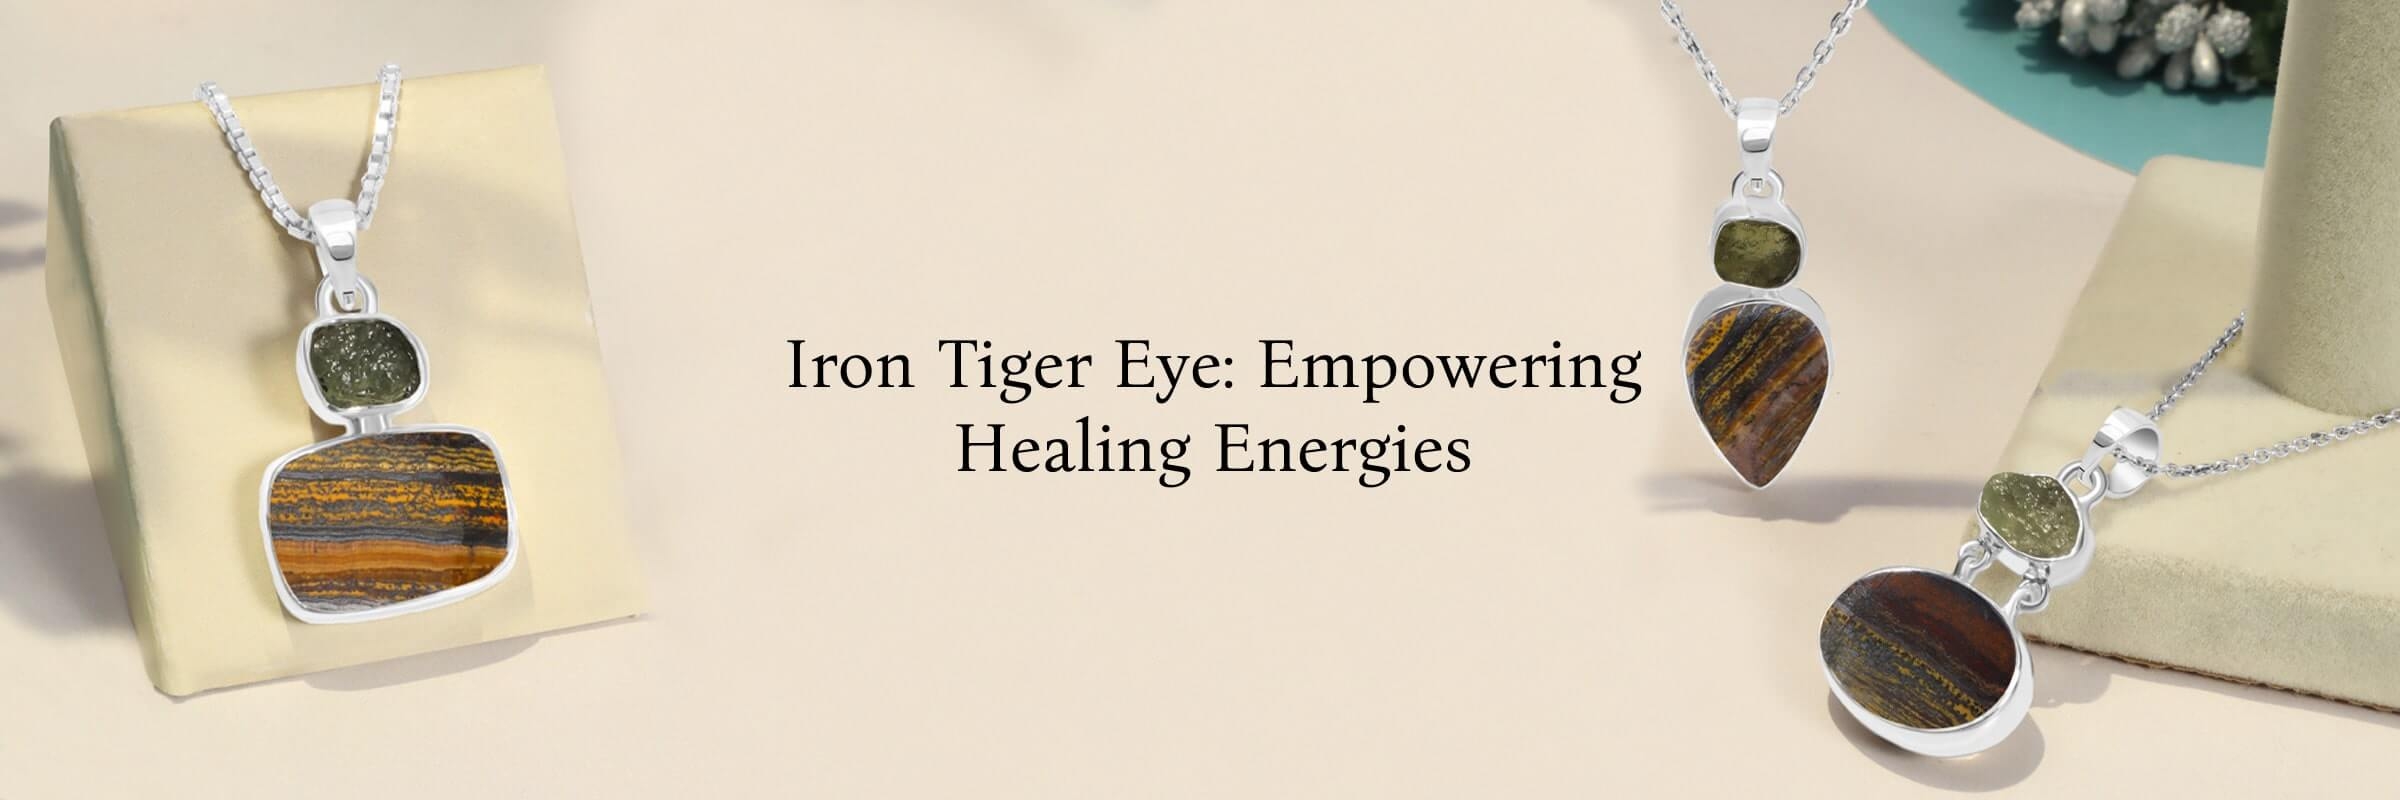 Healing Properties of Iron Tiger Eye